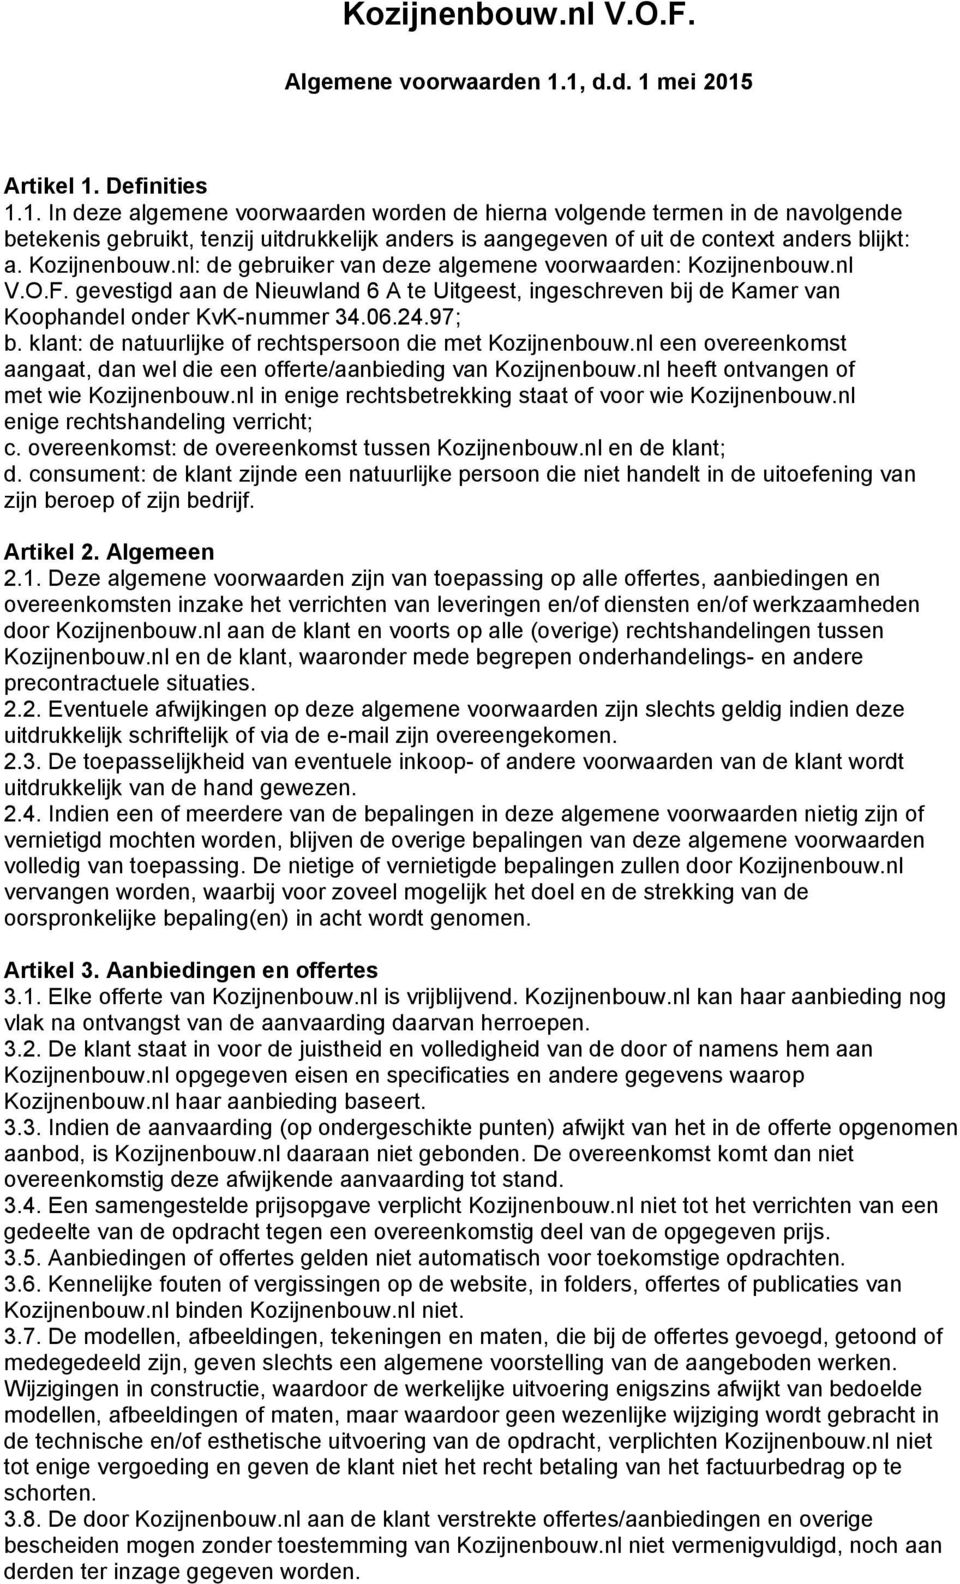 Kozijnenbouw.nl: de gebruiker van deze algemene voorwaarden: Kozijnenbouw.nl V.O.F. gevestigd aan de Nieuwland 6 A te Uitgeest, ingeschreven bij de Kamer van Koophandel onder KvK-nummer 34.06.24.